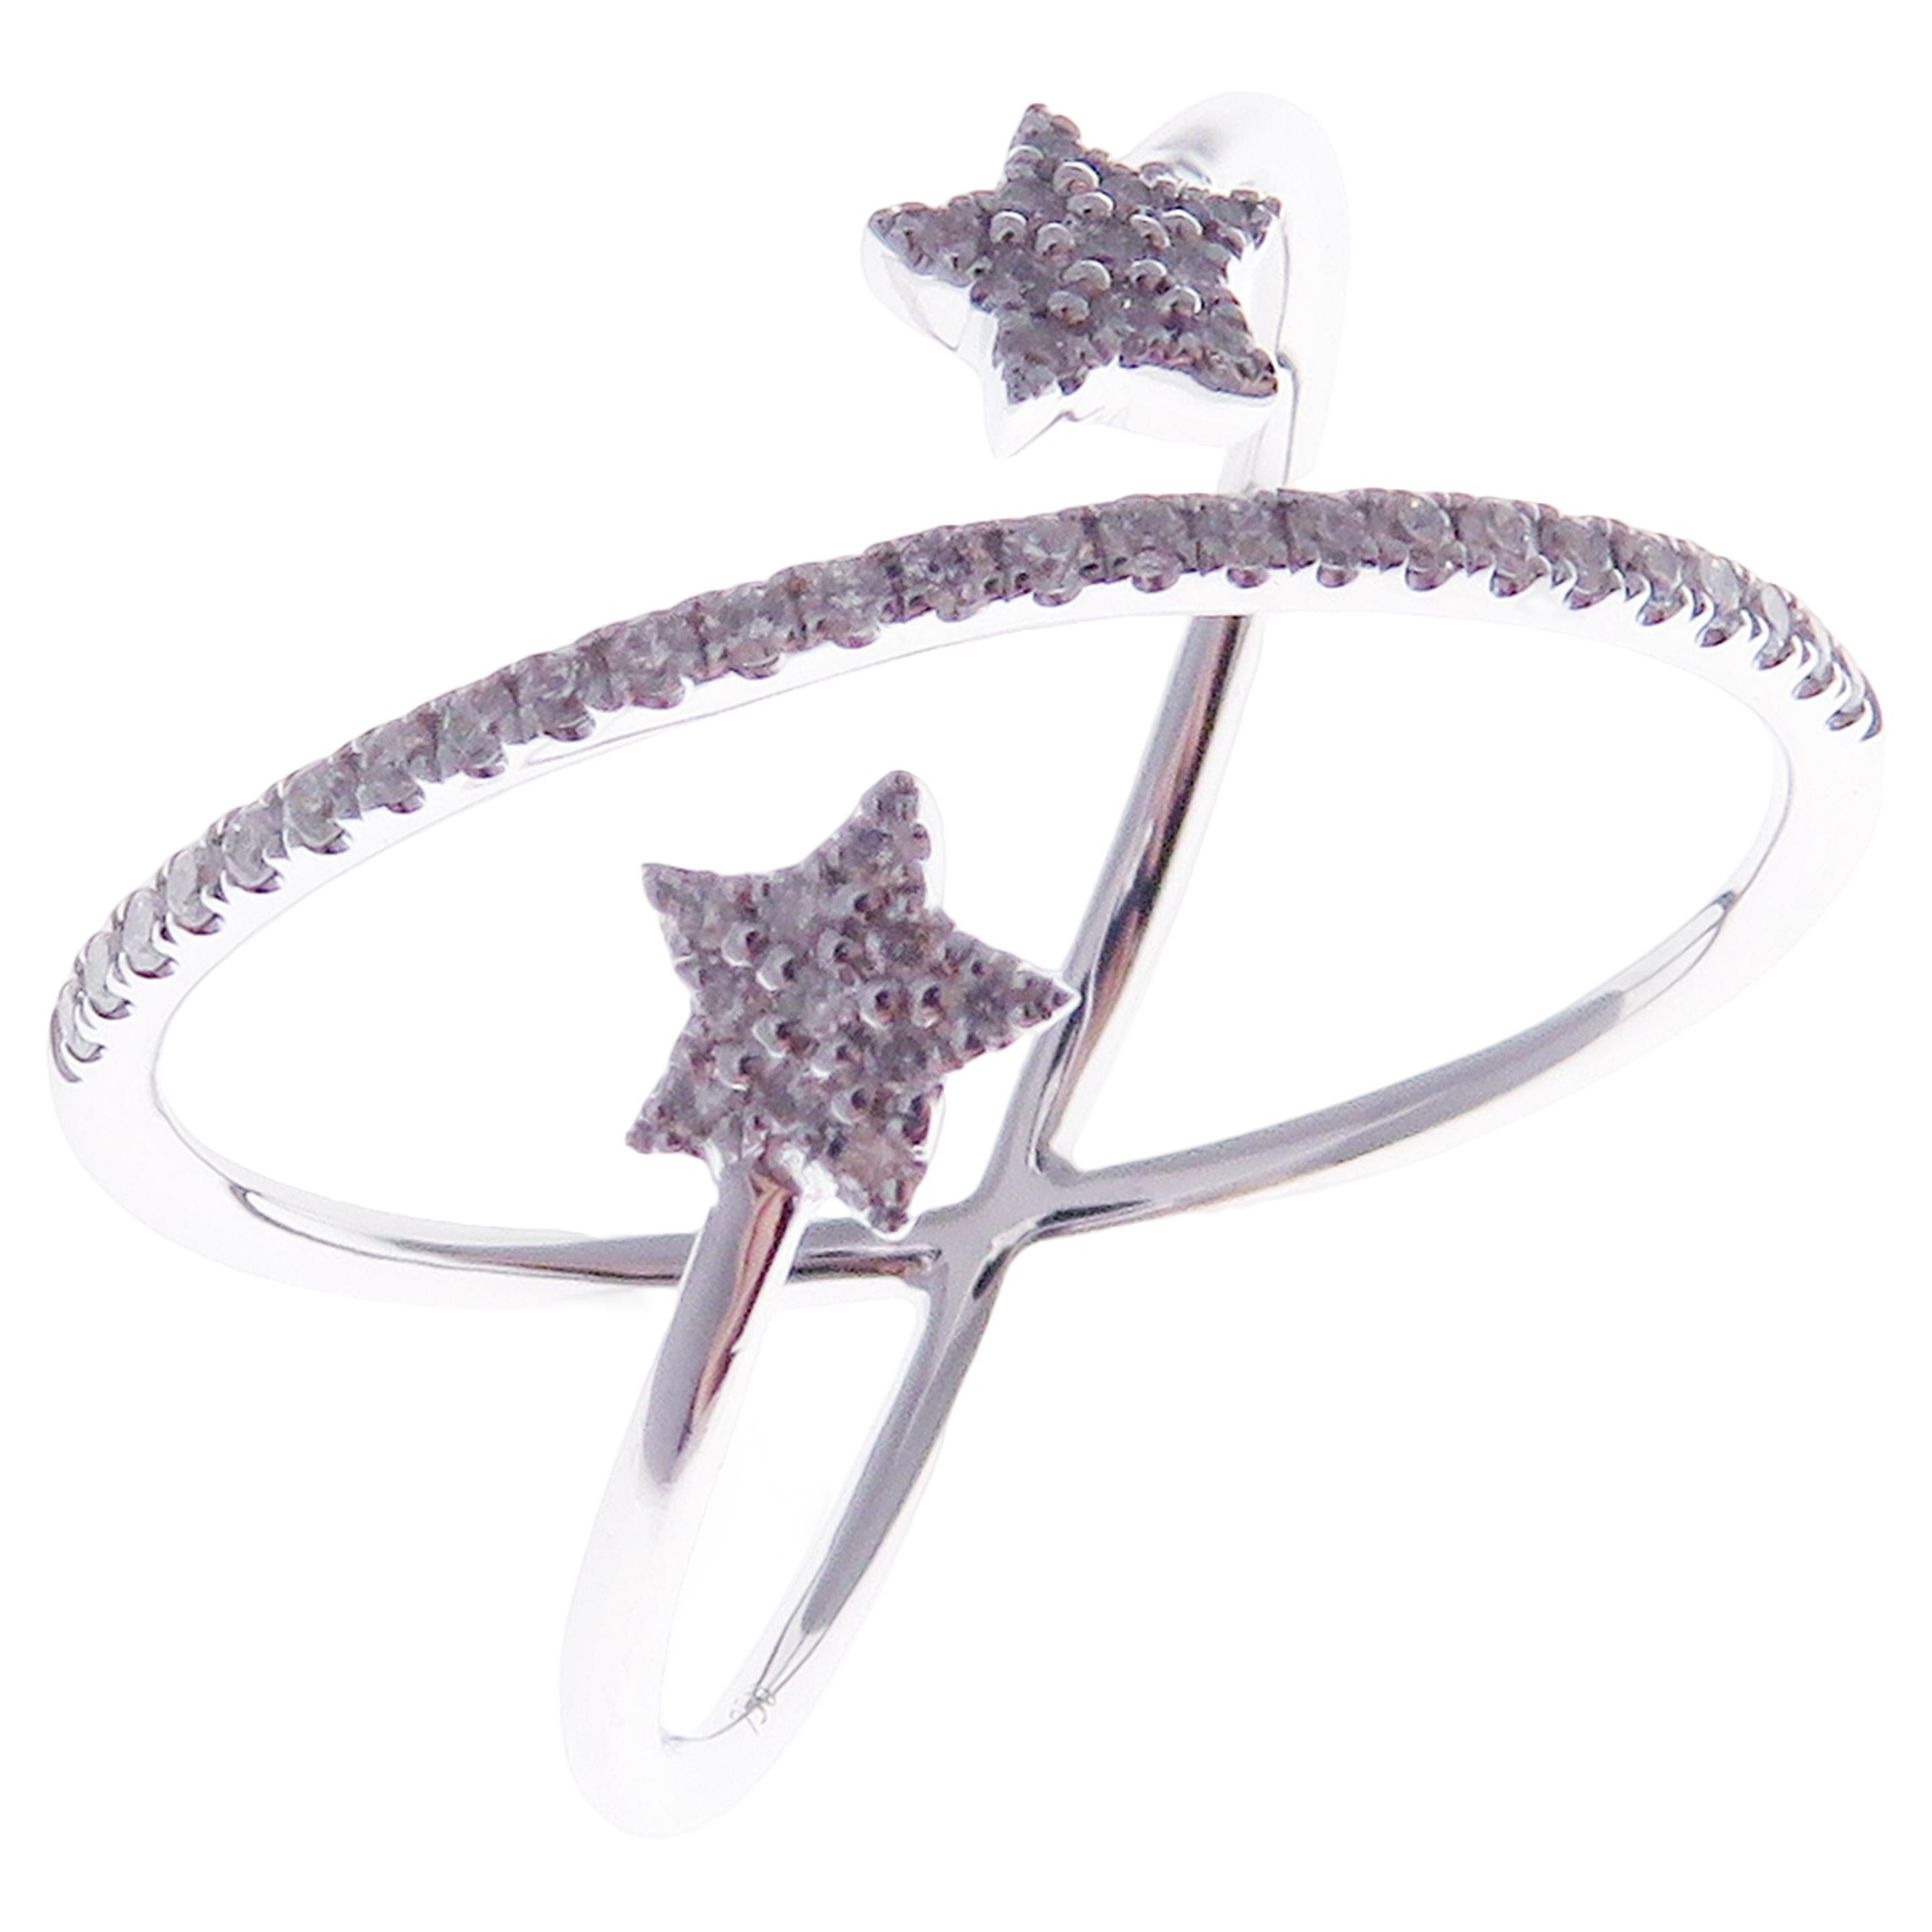 Offener Wishing Star-Ring aus 18 Karat Weißgold mit Diamanten in mehrschichtigen Schirmen